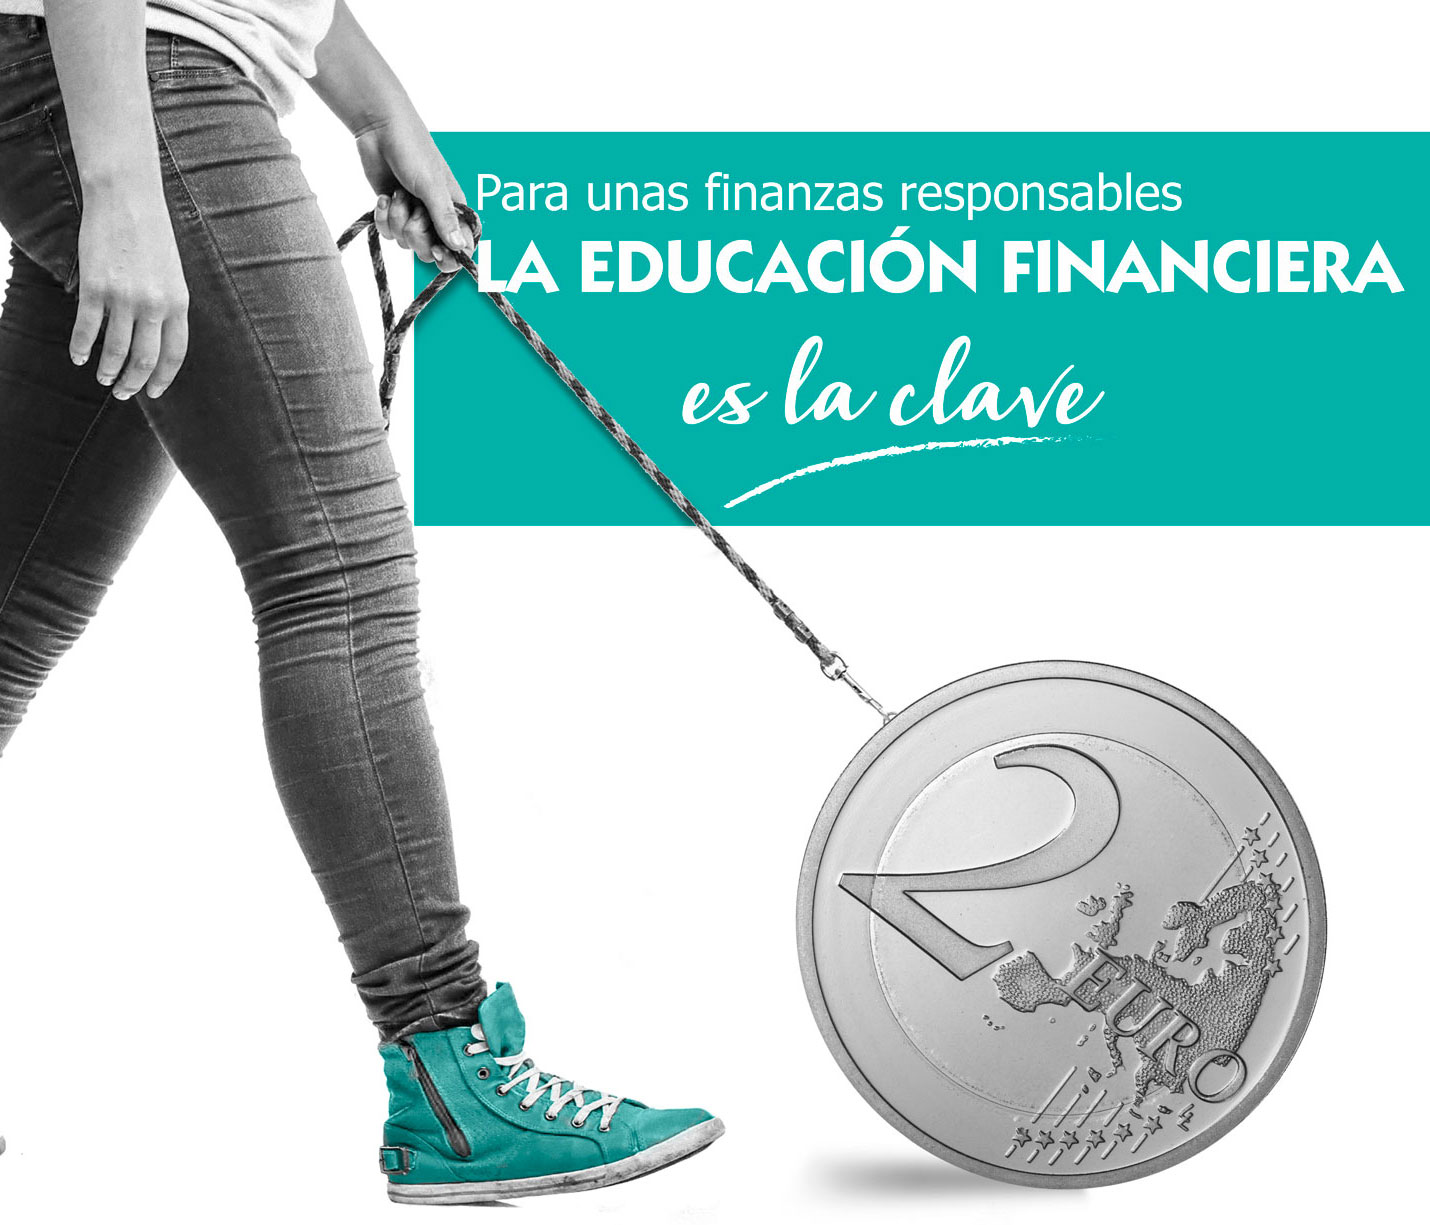 (c) Educacionfinancieracritica.org